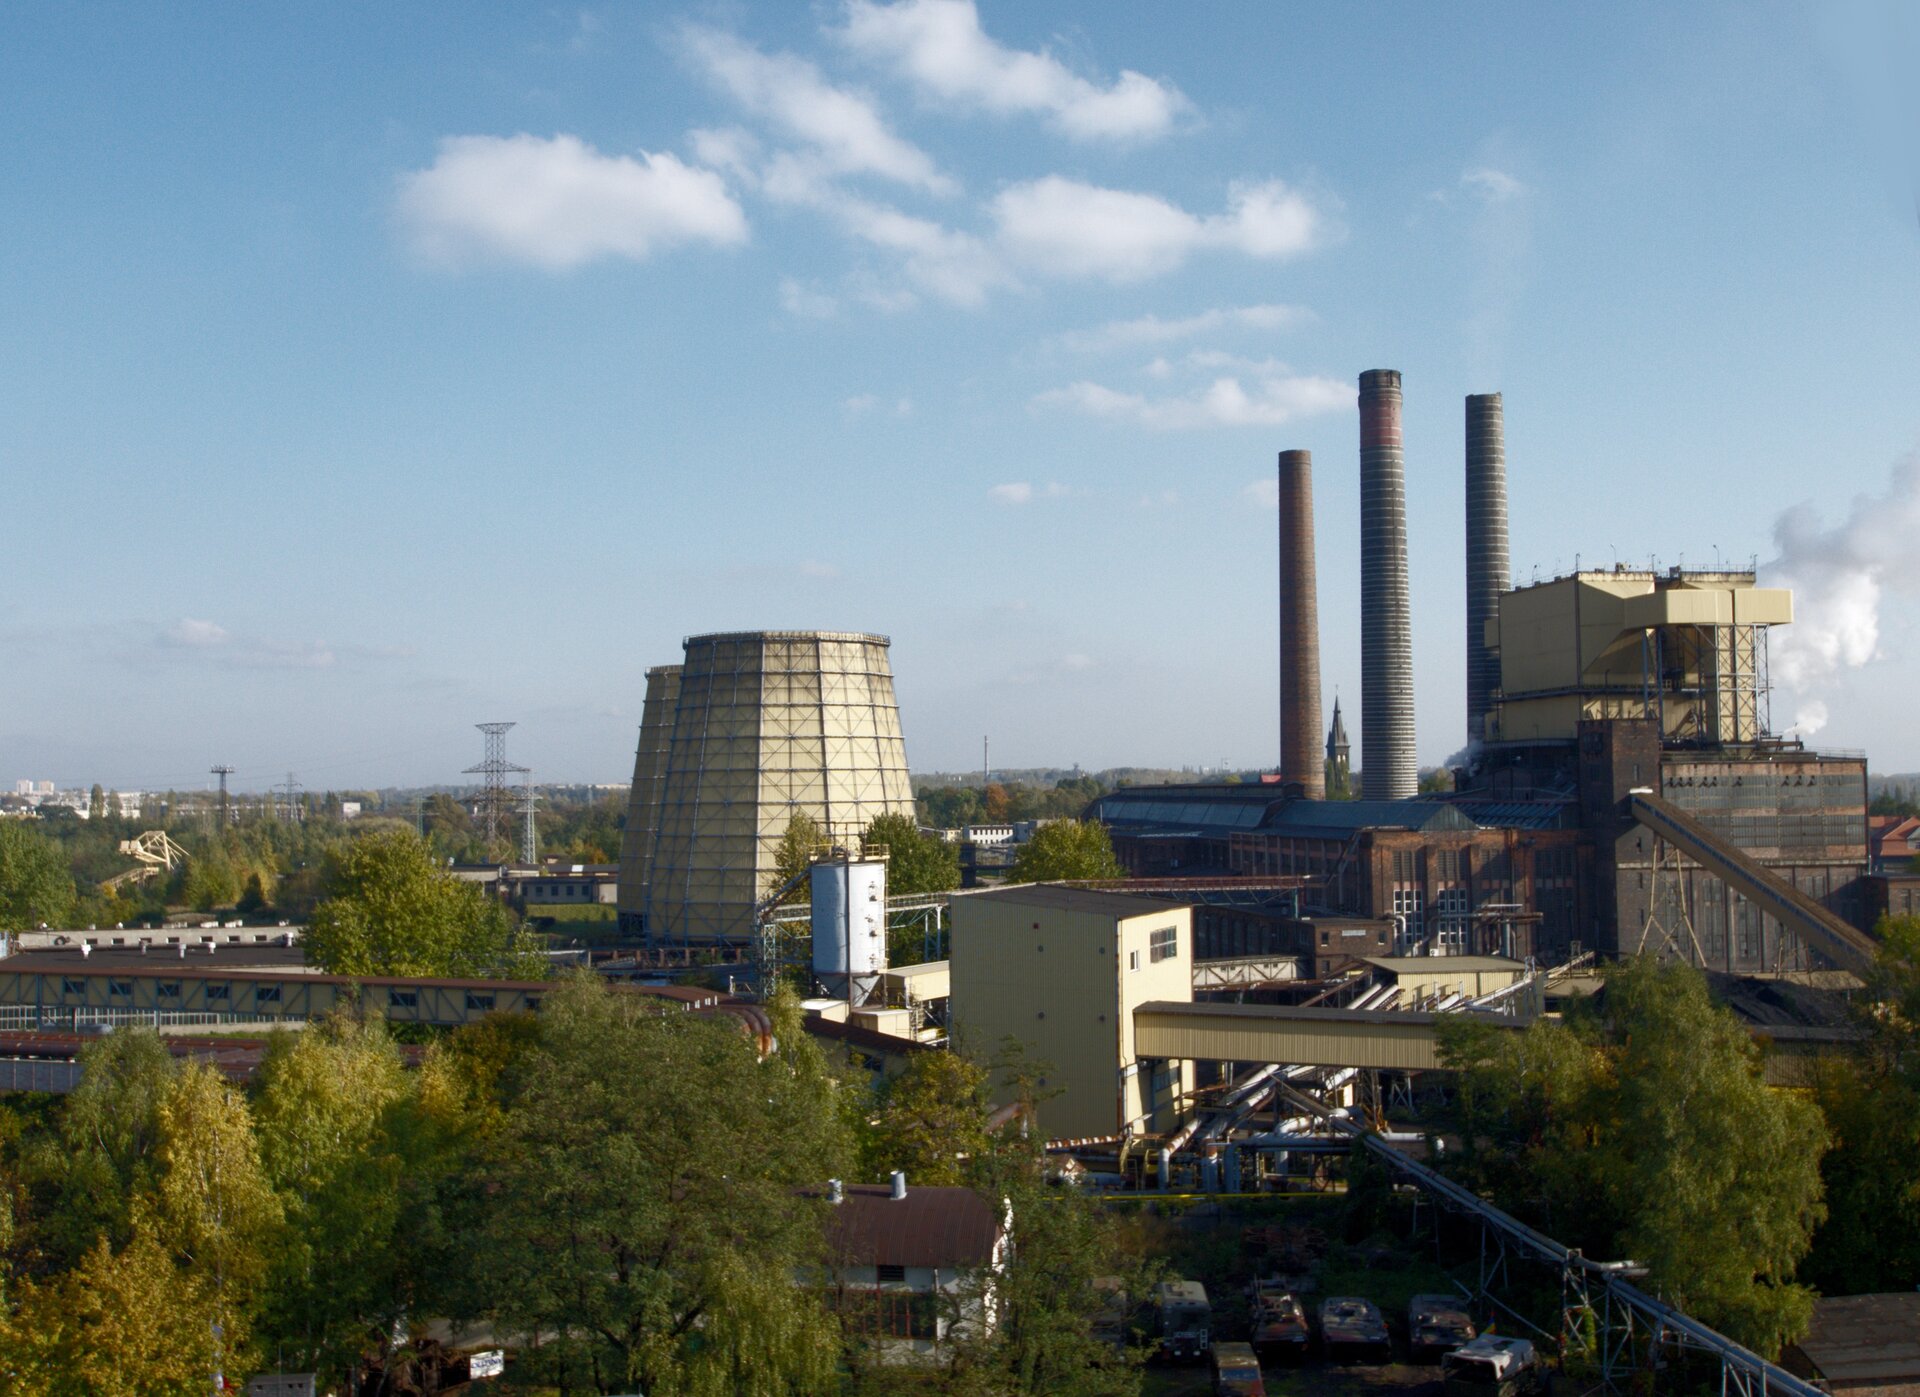 Zdjęcie przedstawia elektrociepłownię w Zabrzu. Na jej terenie znajdują się: trzy kominy, budynki ciepłowni, linie transportujące, dwa silosy oraz kilka drzew.